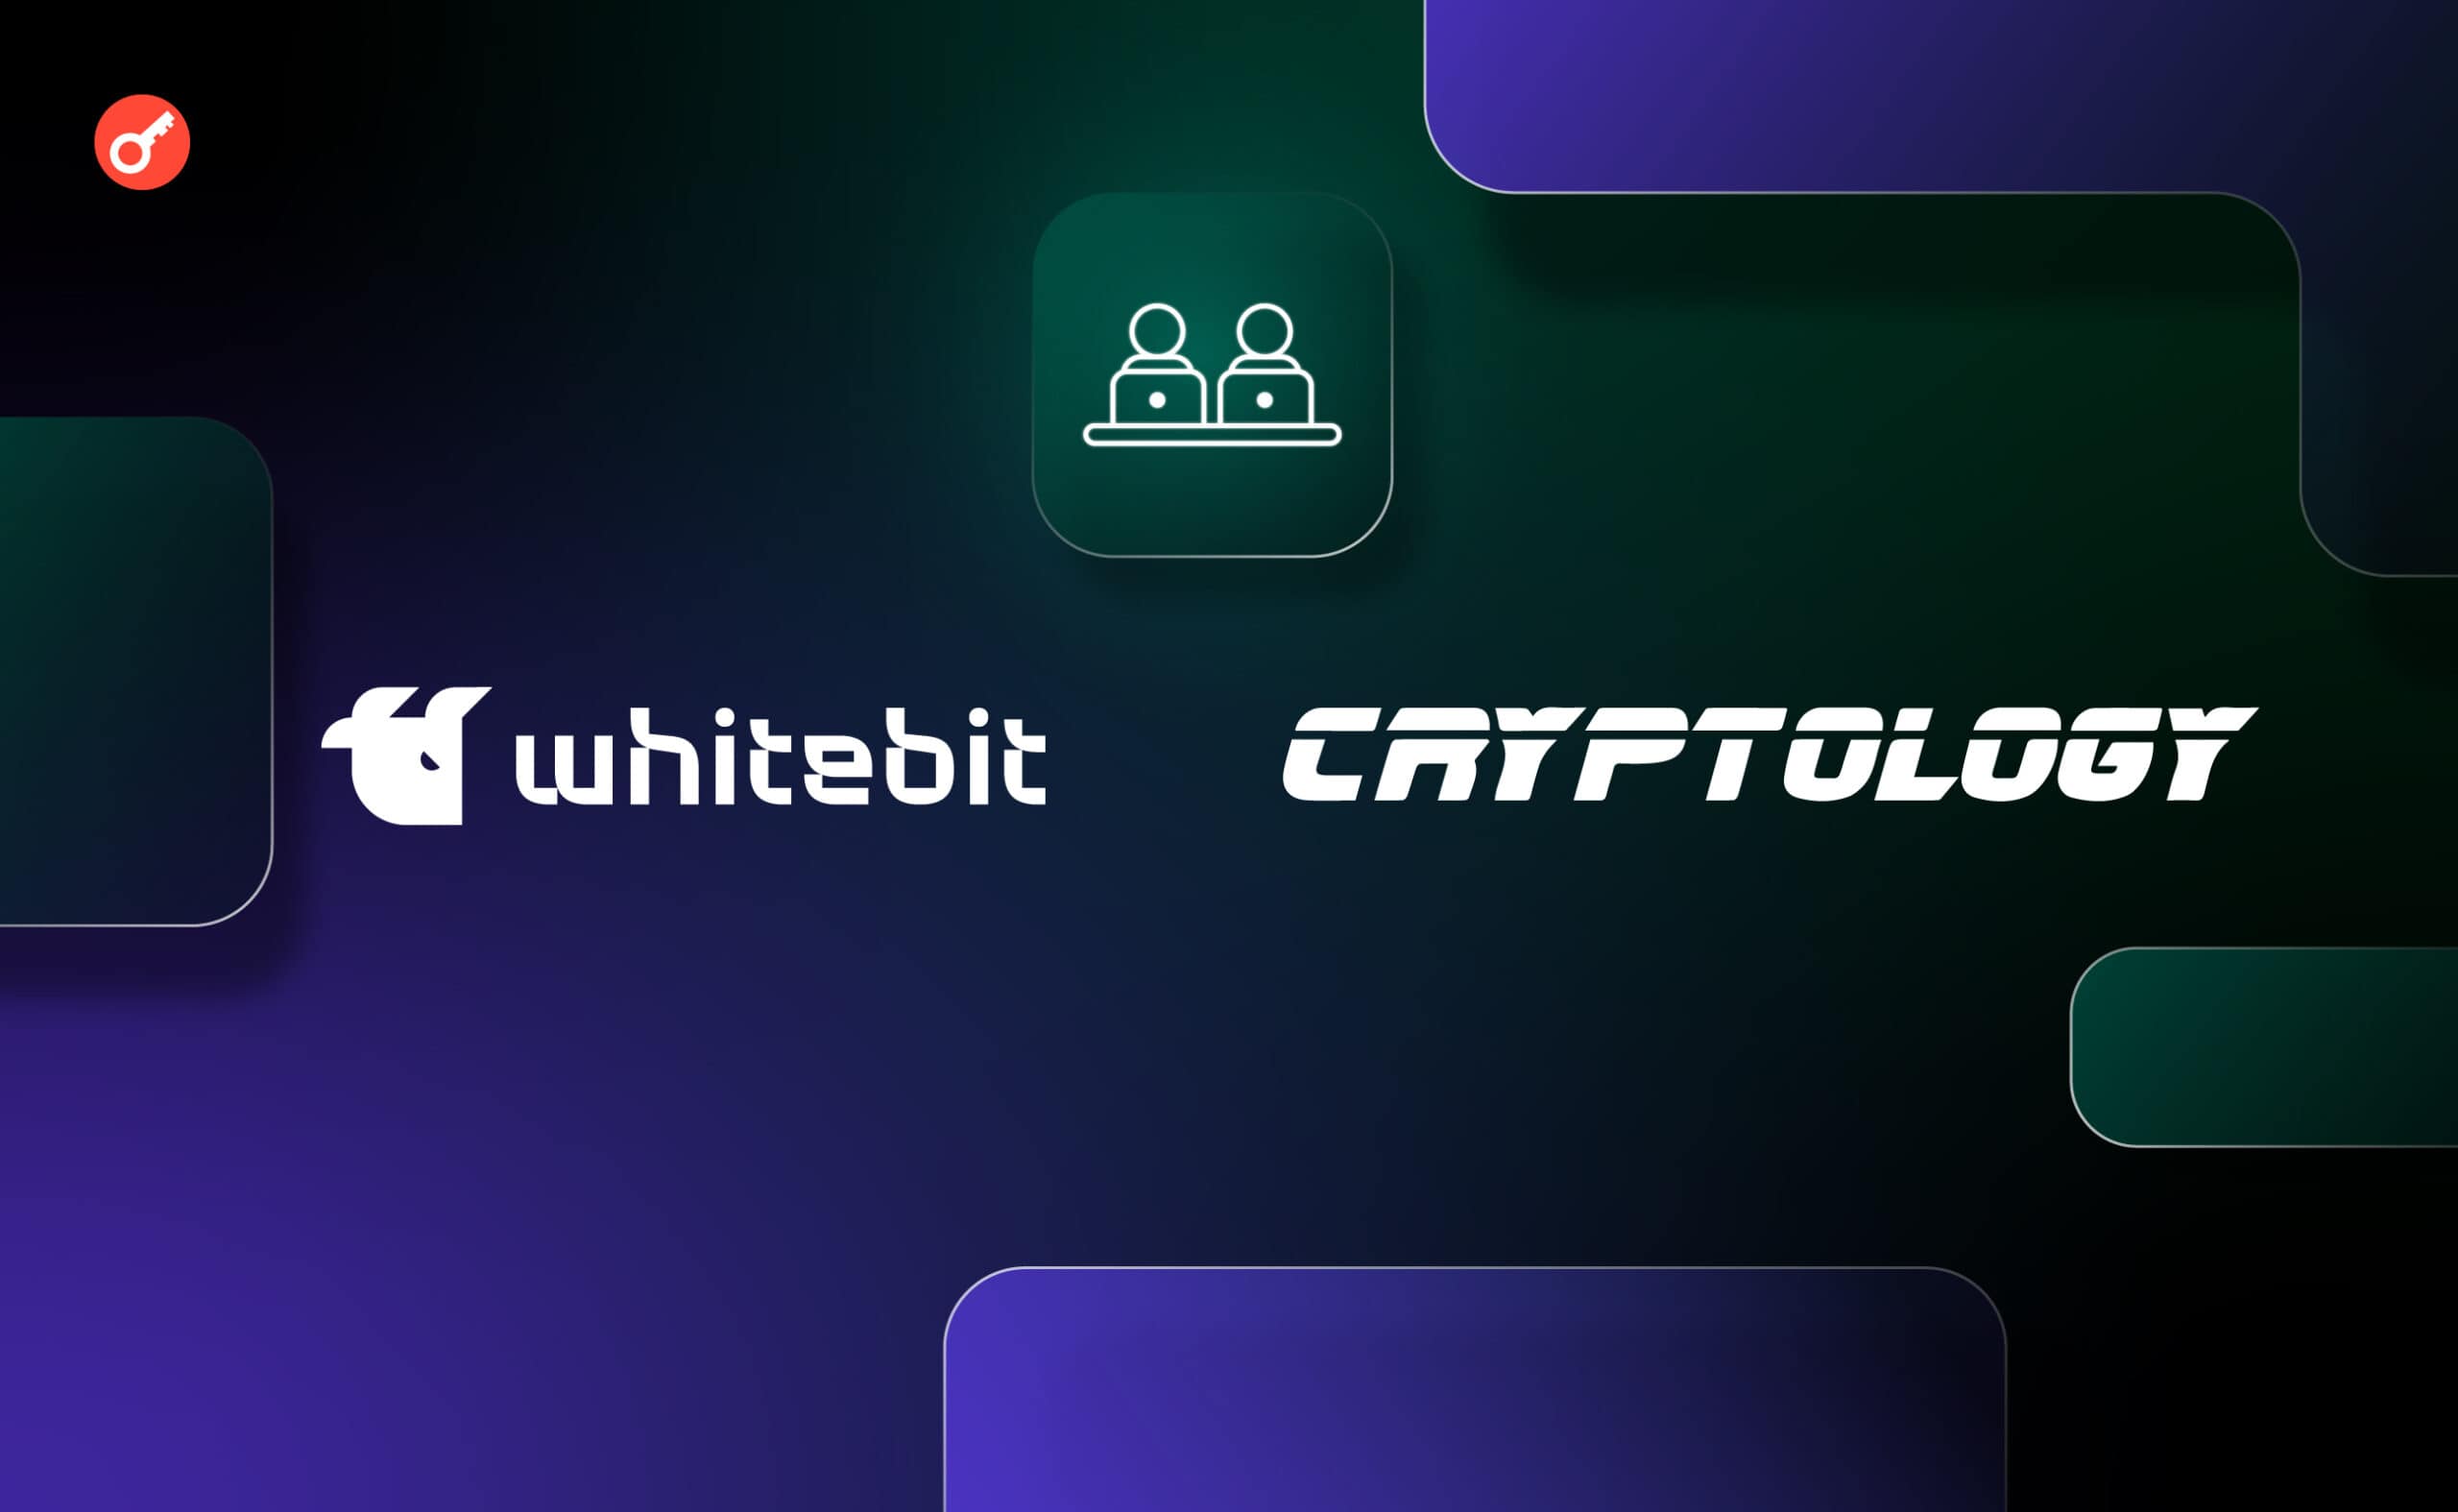 WhiteBIT и Cryptology запустили бесплатный курс финансовой грамотности для подростков. Заглавный коллаж новости.